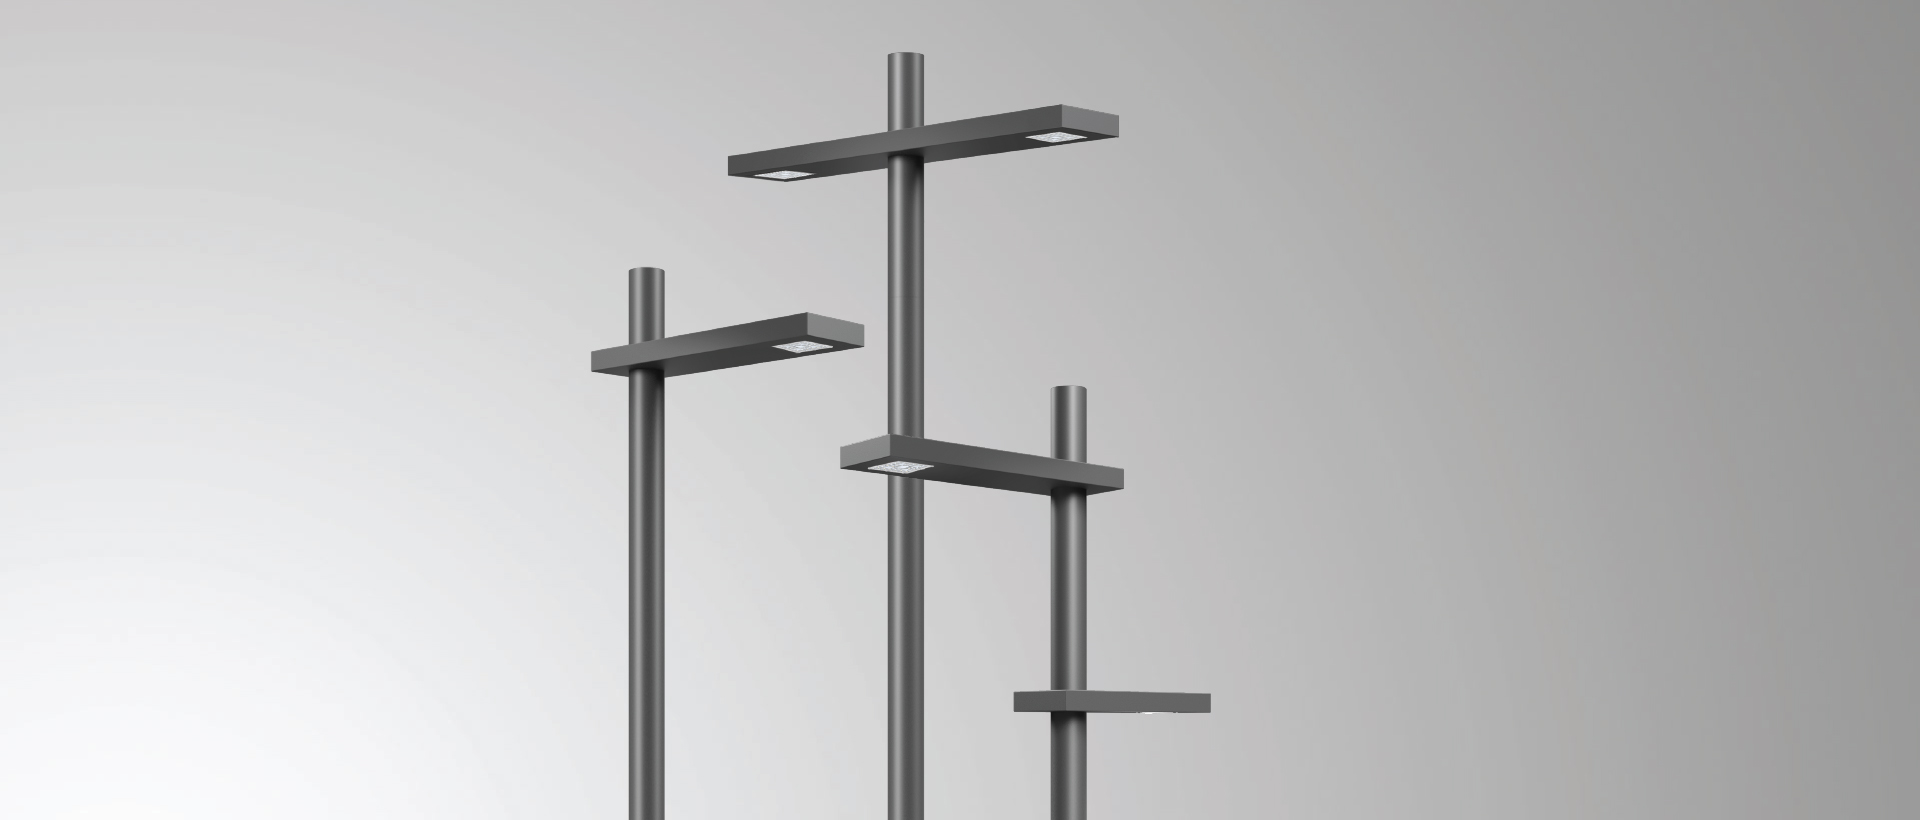 Aluminium Lighting Poles